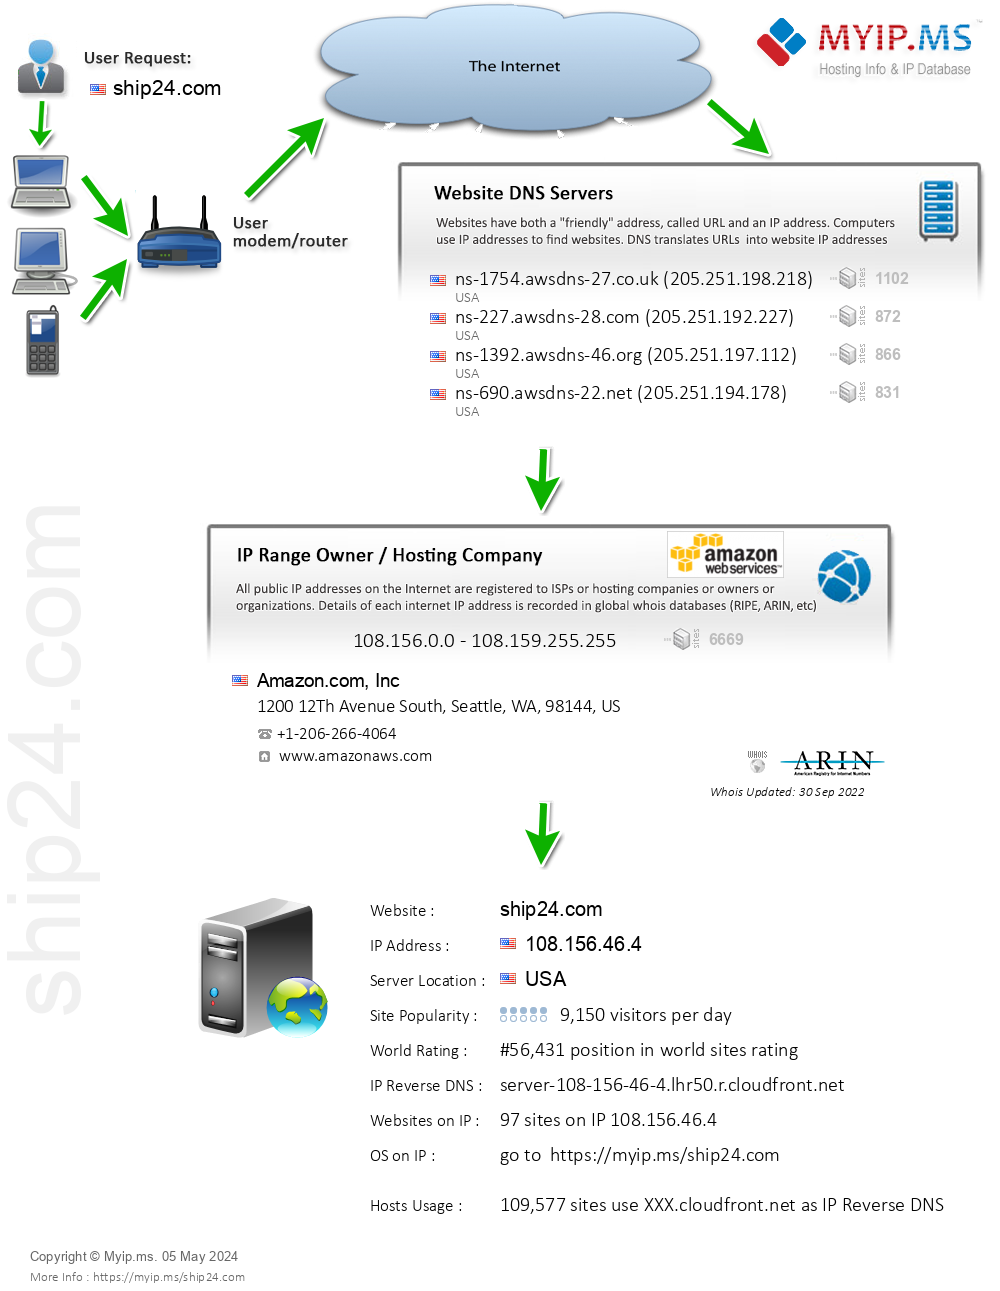 Ship24.com - Website Hosting Visual IP Diagram